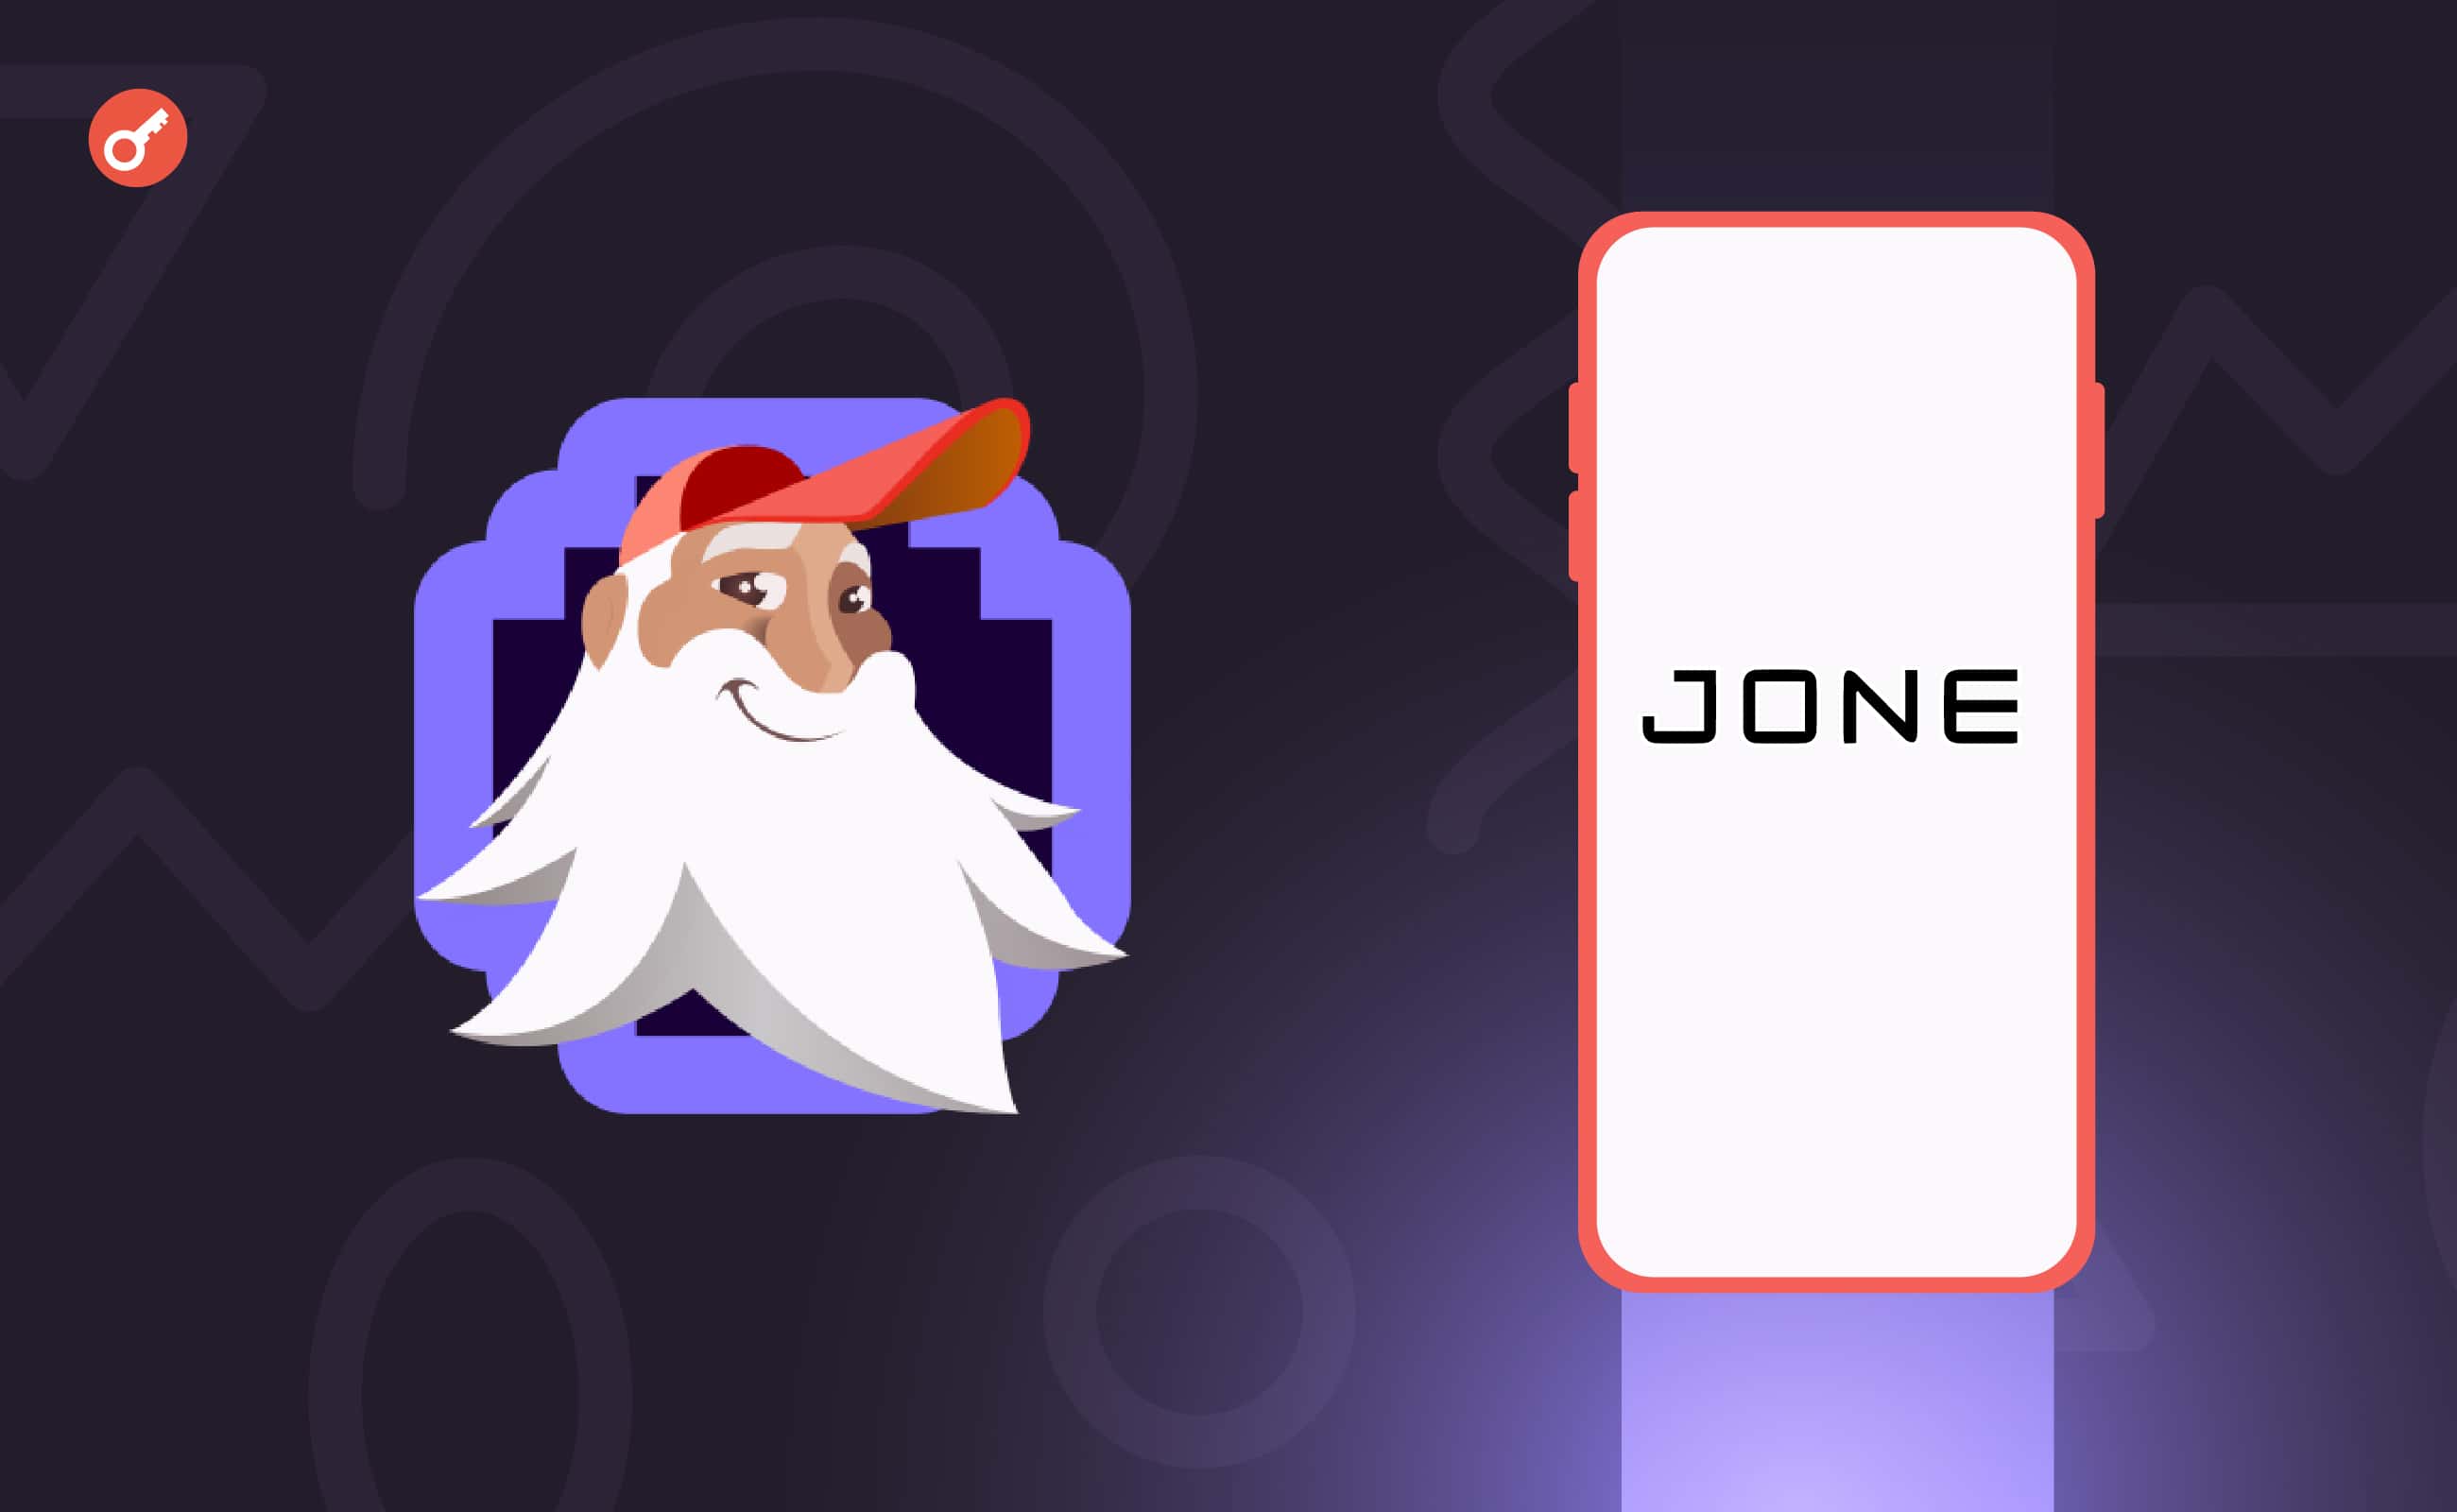 Биржа Trader Joe анонсировала выпуск смартфона JONE. Заглавный коллаж новости.